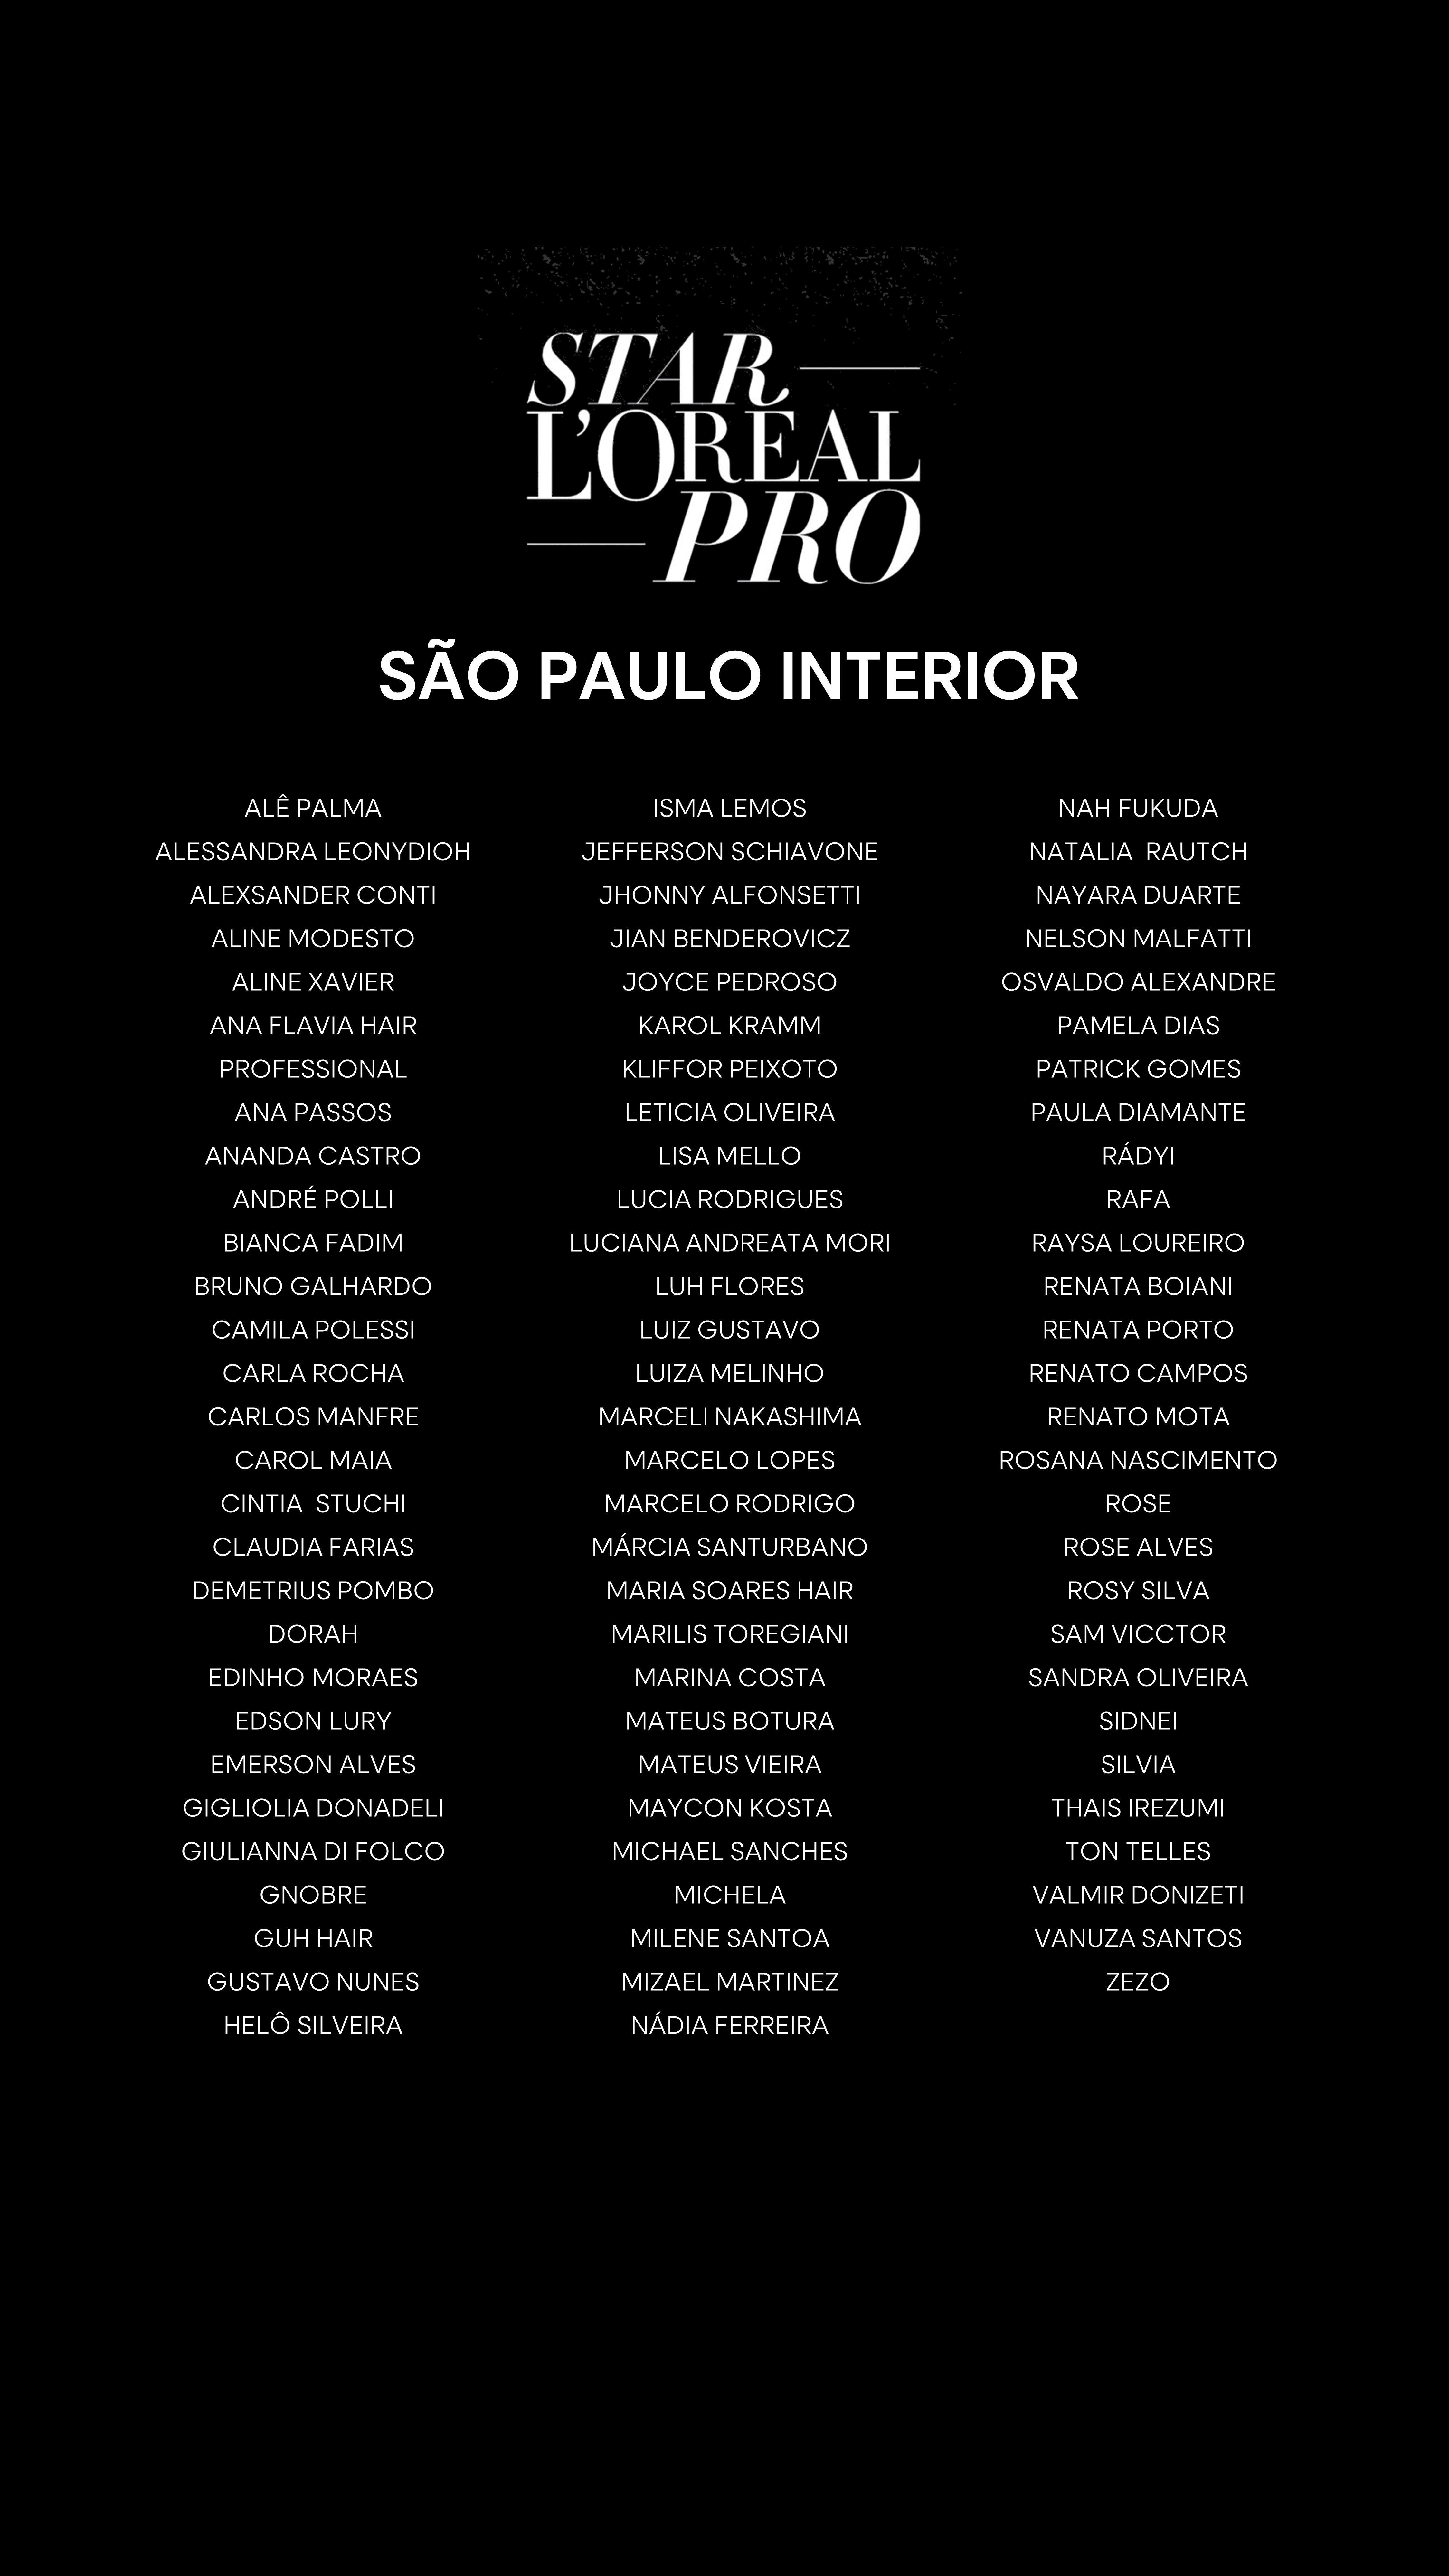 São Paulo Interior